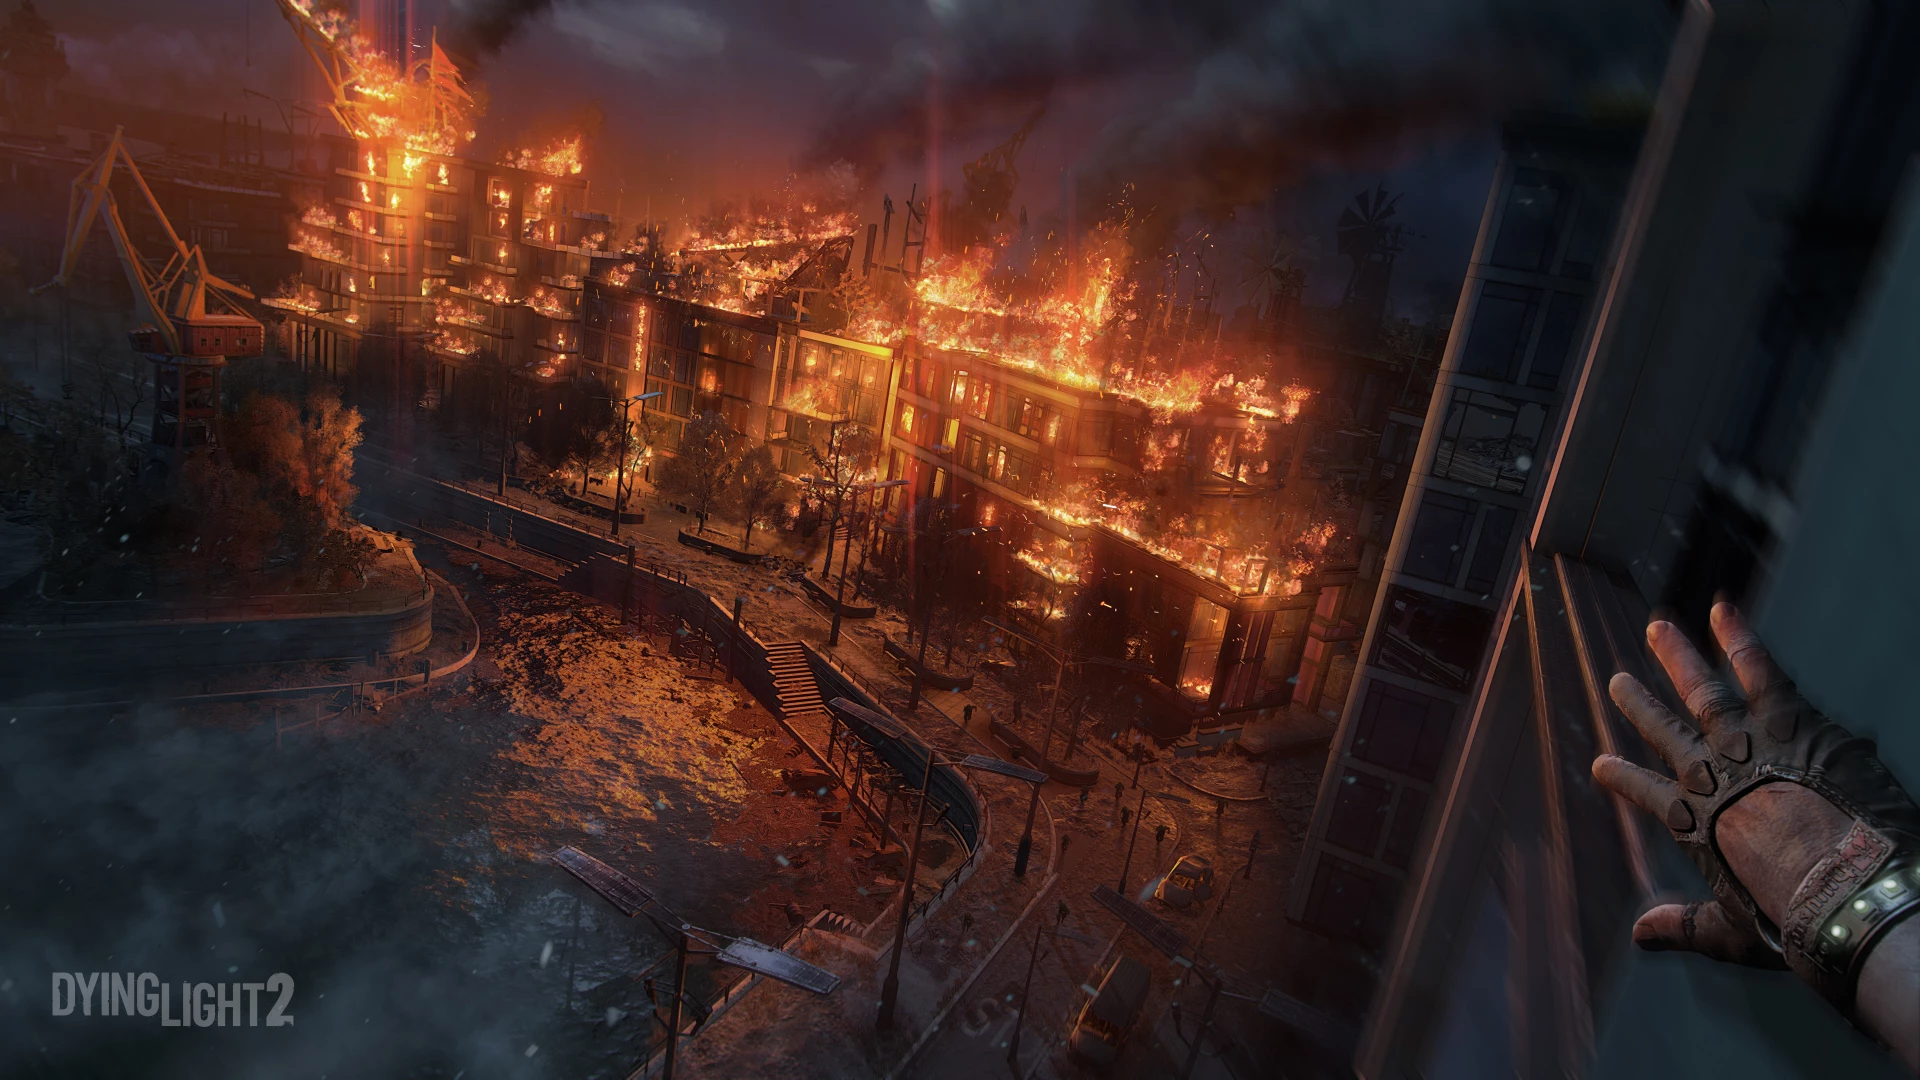 Dying Light 2 Stay Human voor de PlayStation 5 kopen op nedgame.nl